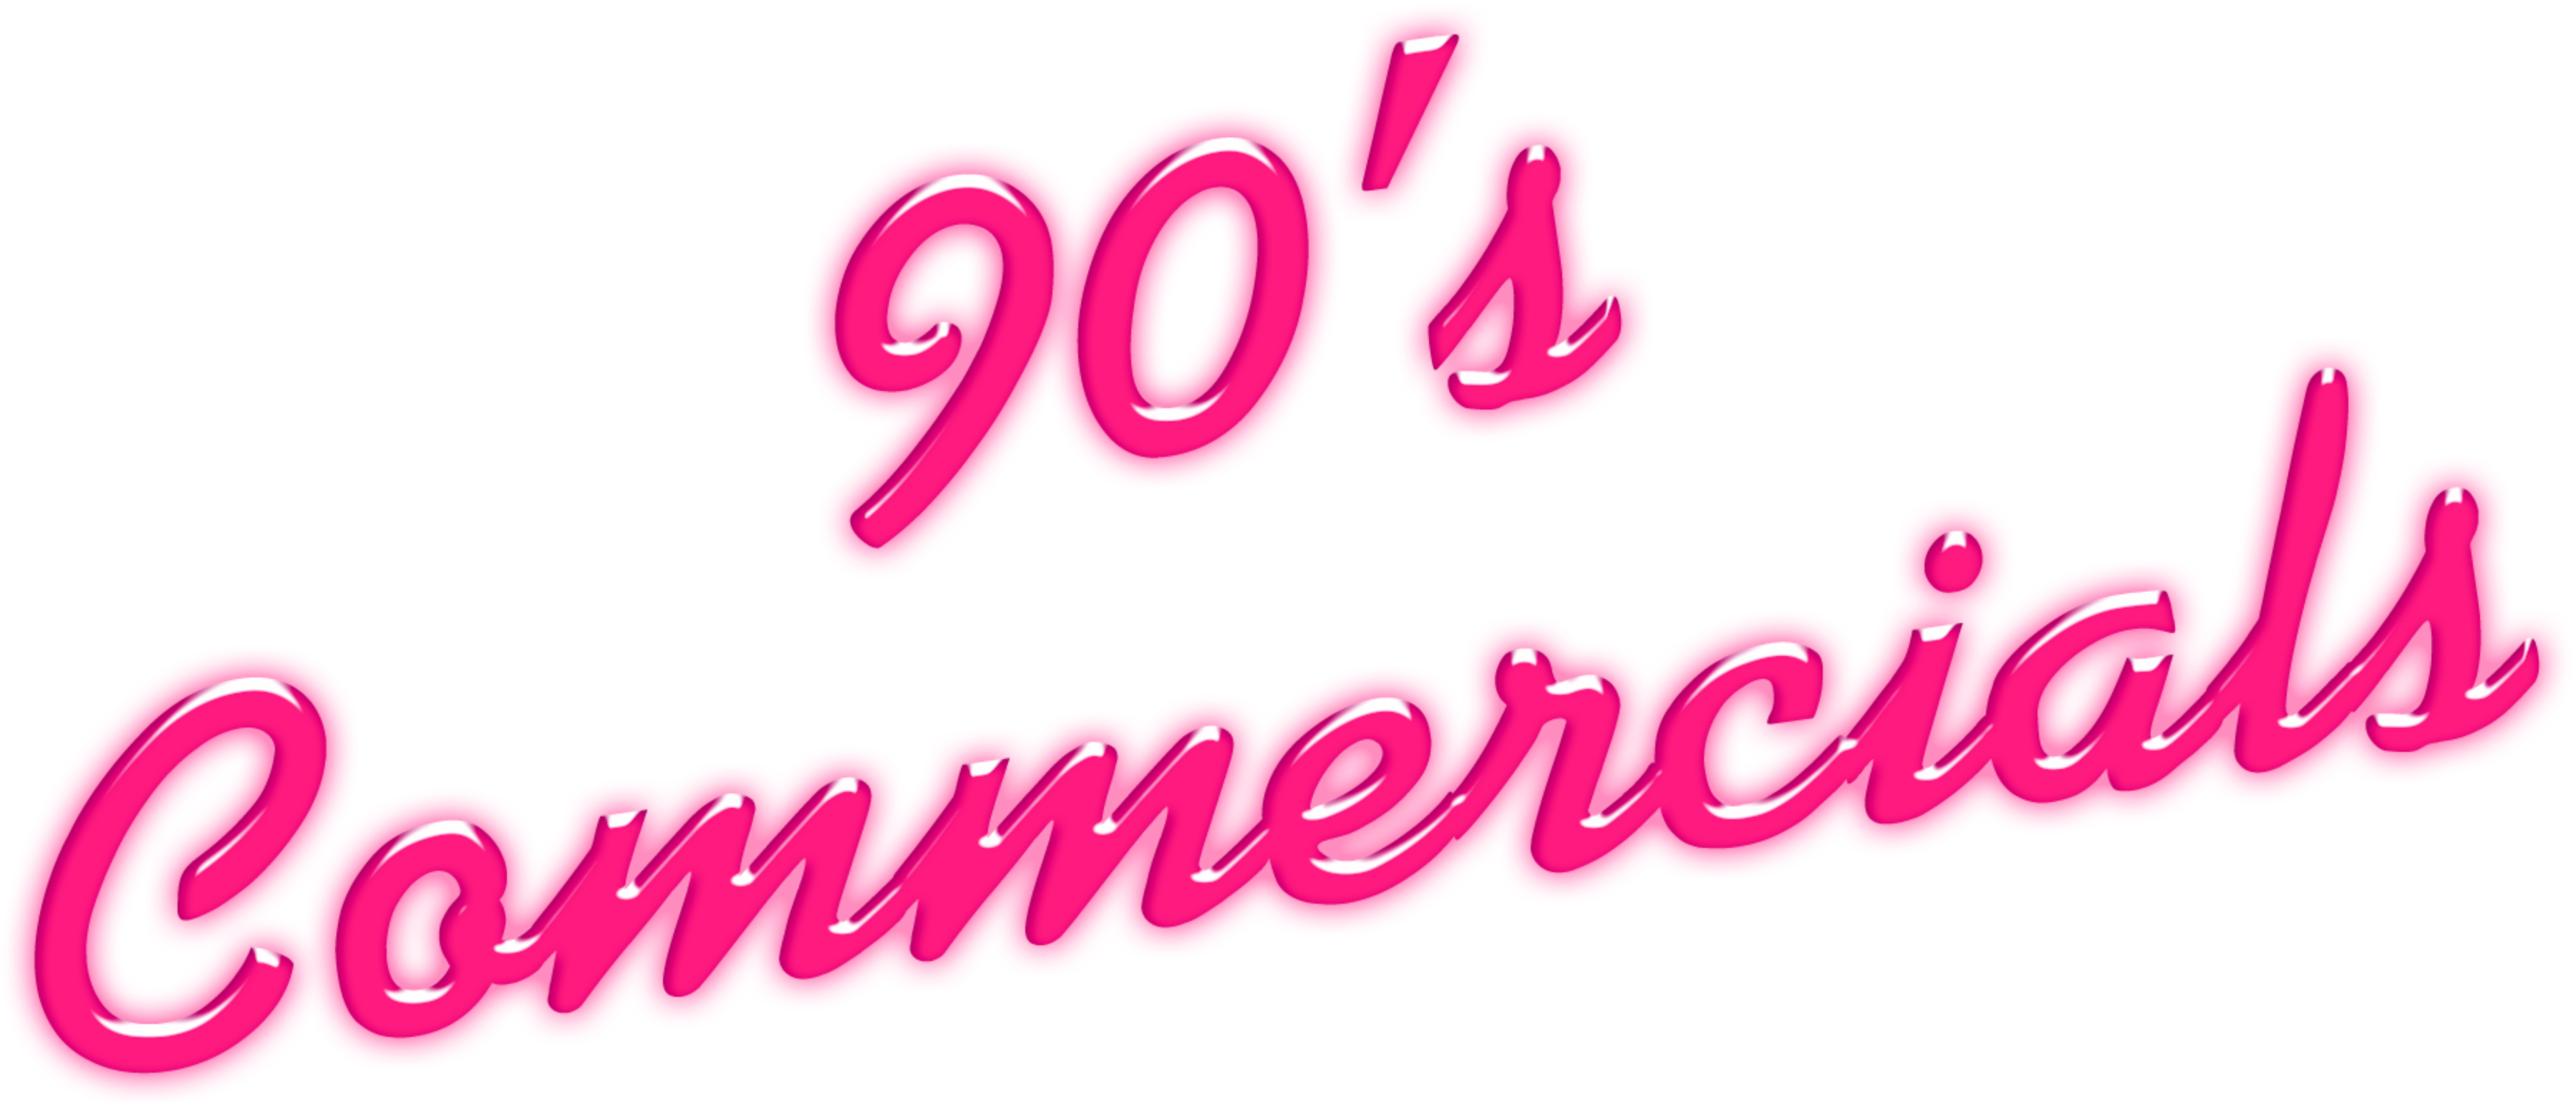 90's Commercials Disc 14